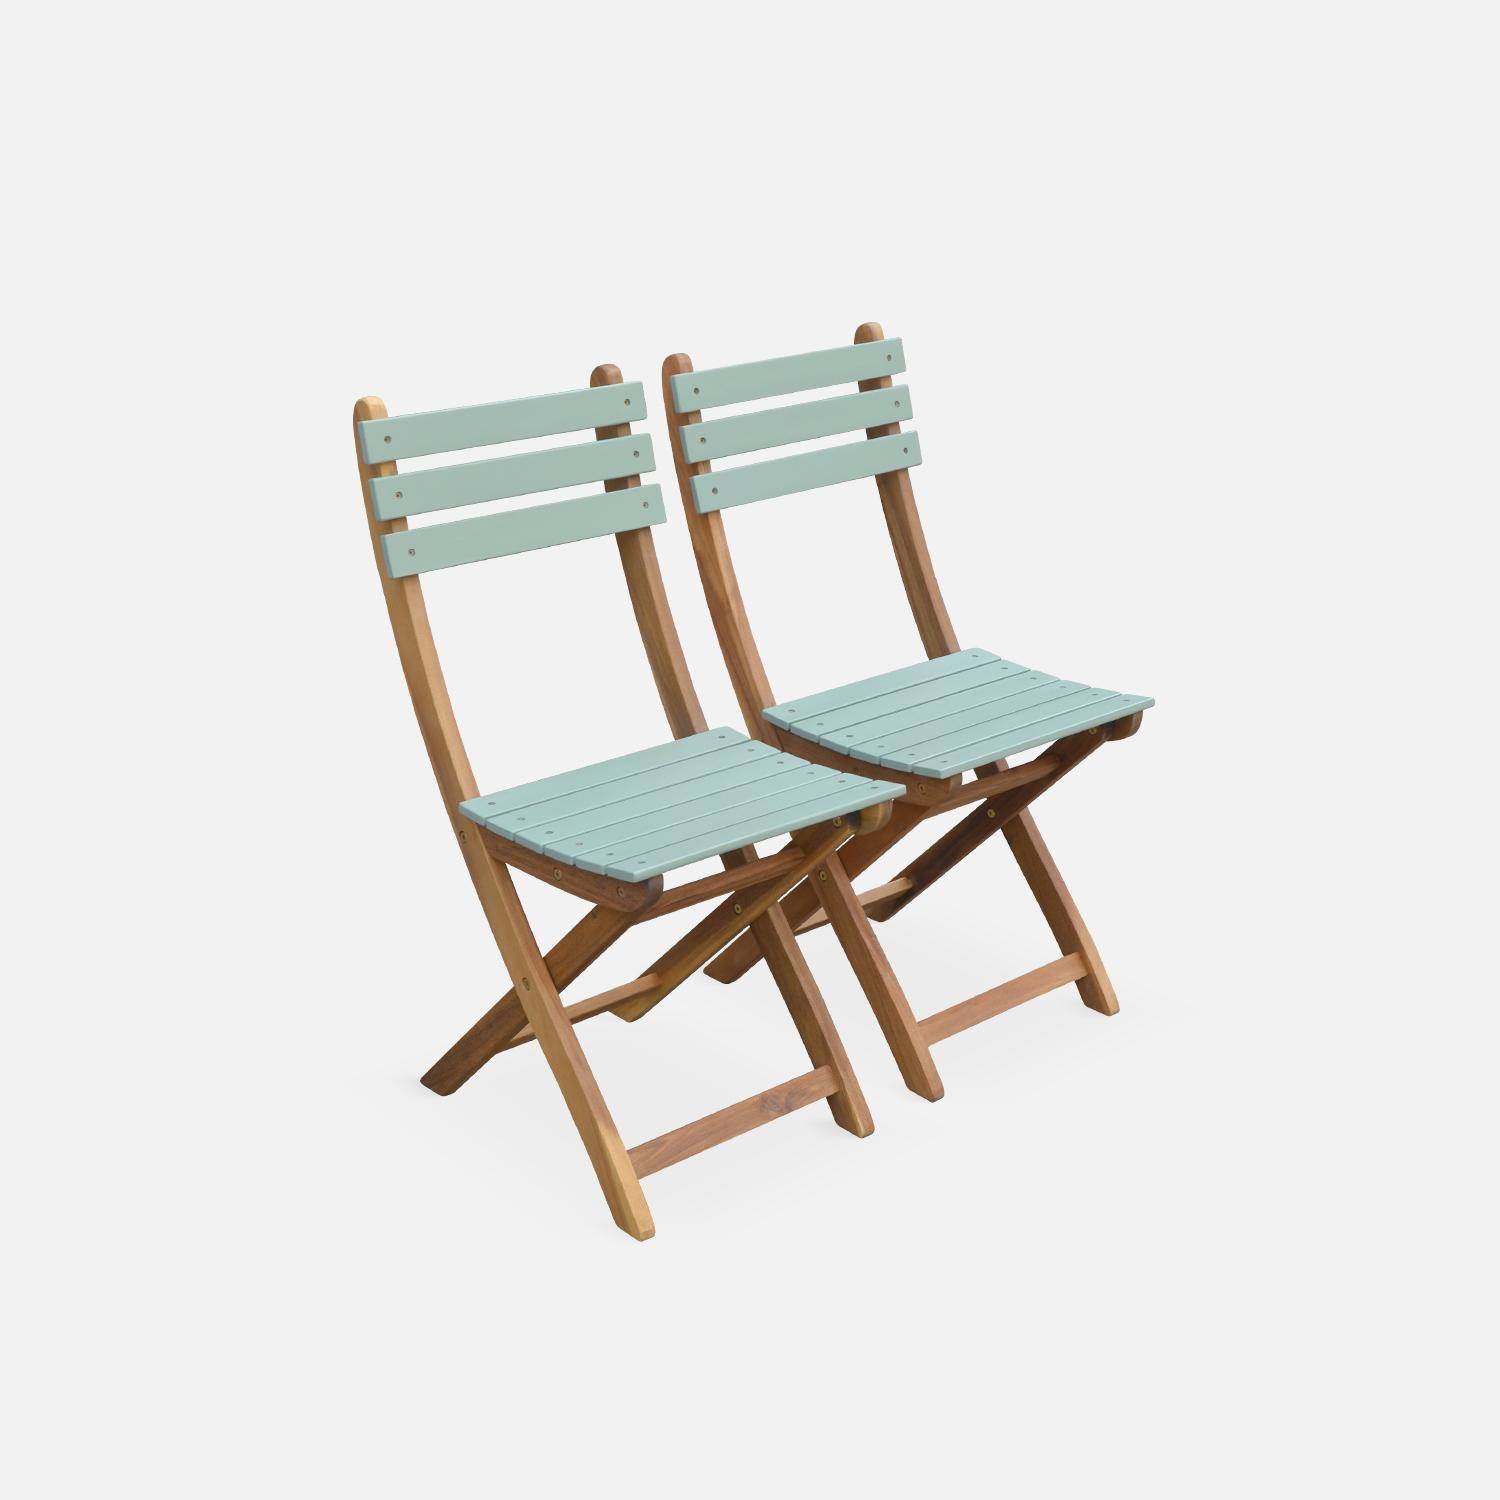 Conjunto de jardín de madera Bistro 60x60cm - Barcelona - verde grisáceo, mesa plegable bicolor con 2 sillas plegables, acacia Photo2